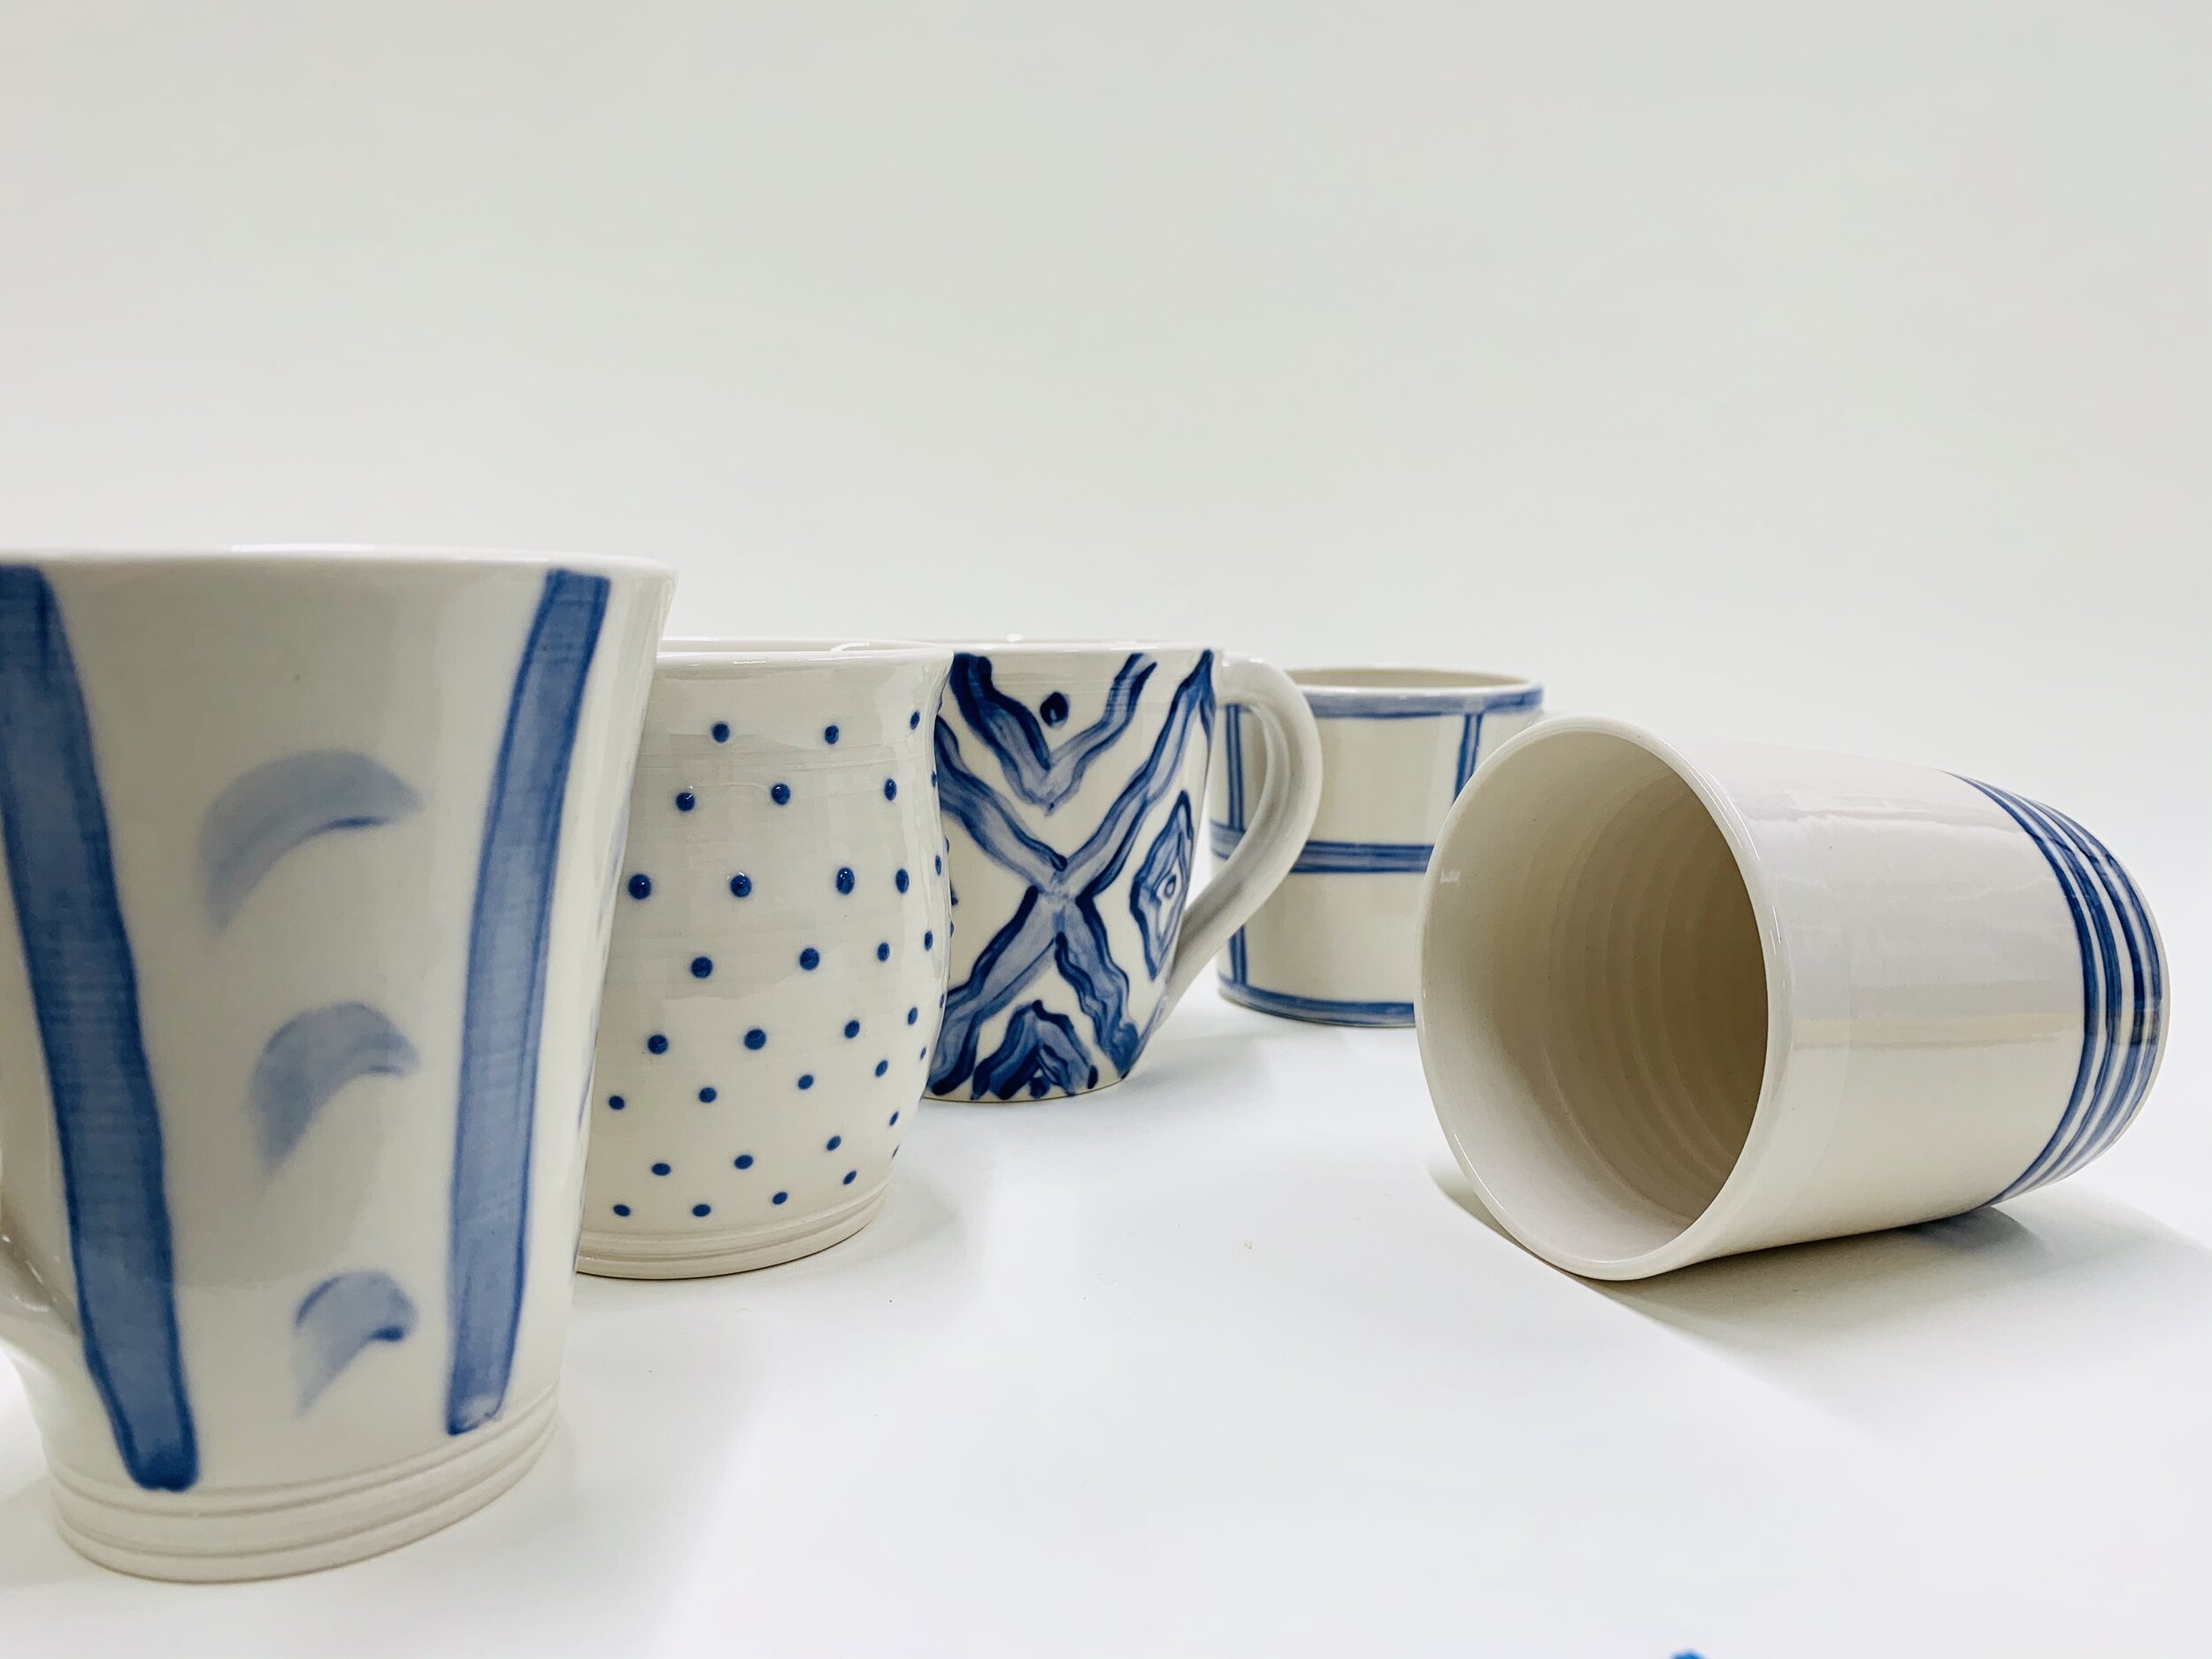 Azure Glazed Ceramic Tumbler, Duck Ceramics